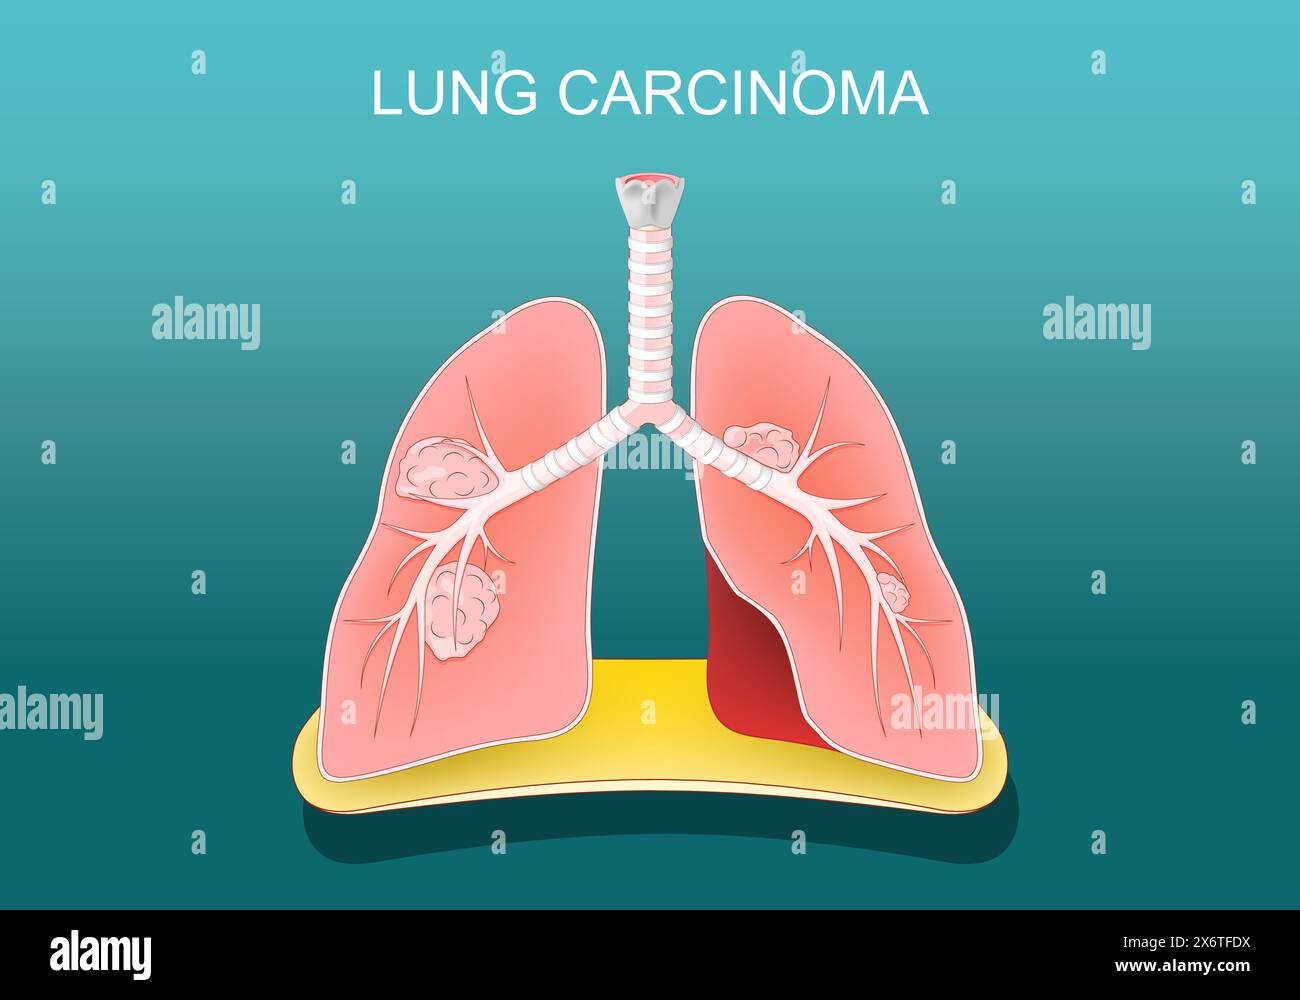 Carcinome pulmonaire. Cancer du poumon. Les tumeurs métastasent, se propageant à d'autres parties du corps. Affiche vectorielle. Illustration plate isométrique. Illustration de Vecteur